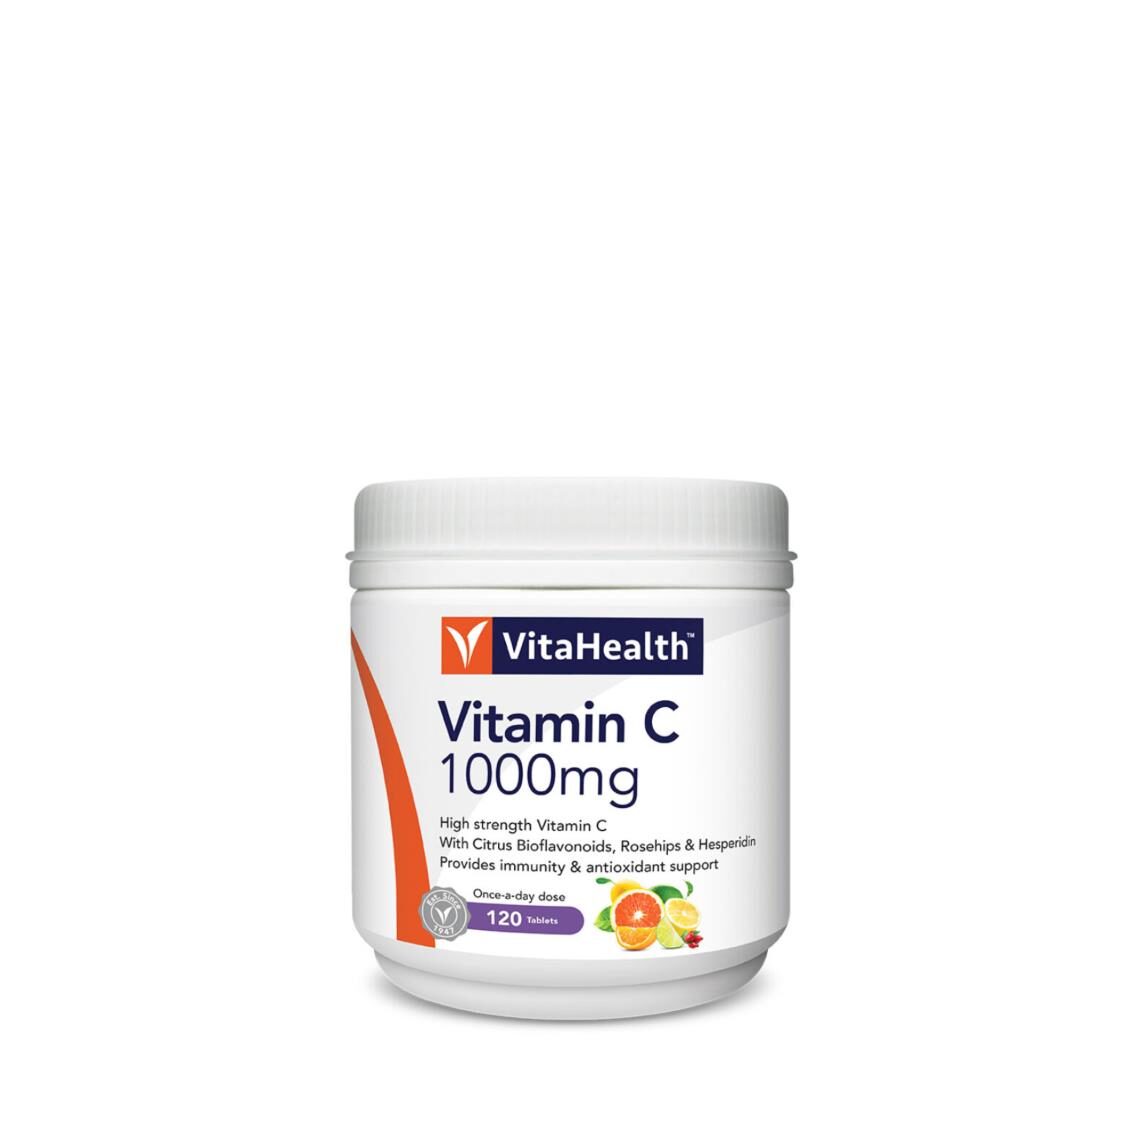 VitaHealth Vitamin C 1000mg 120s